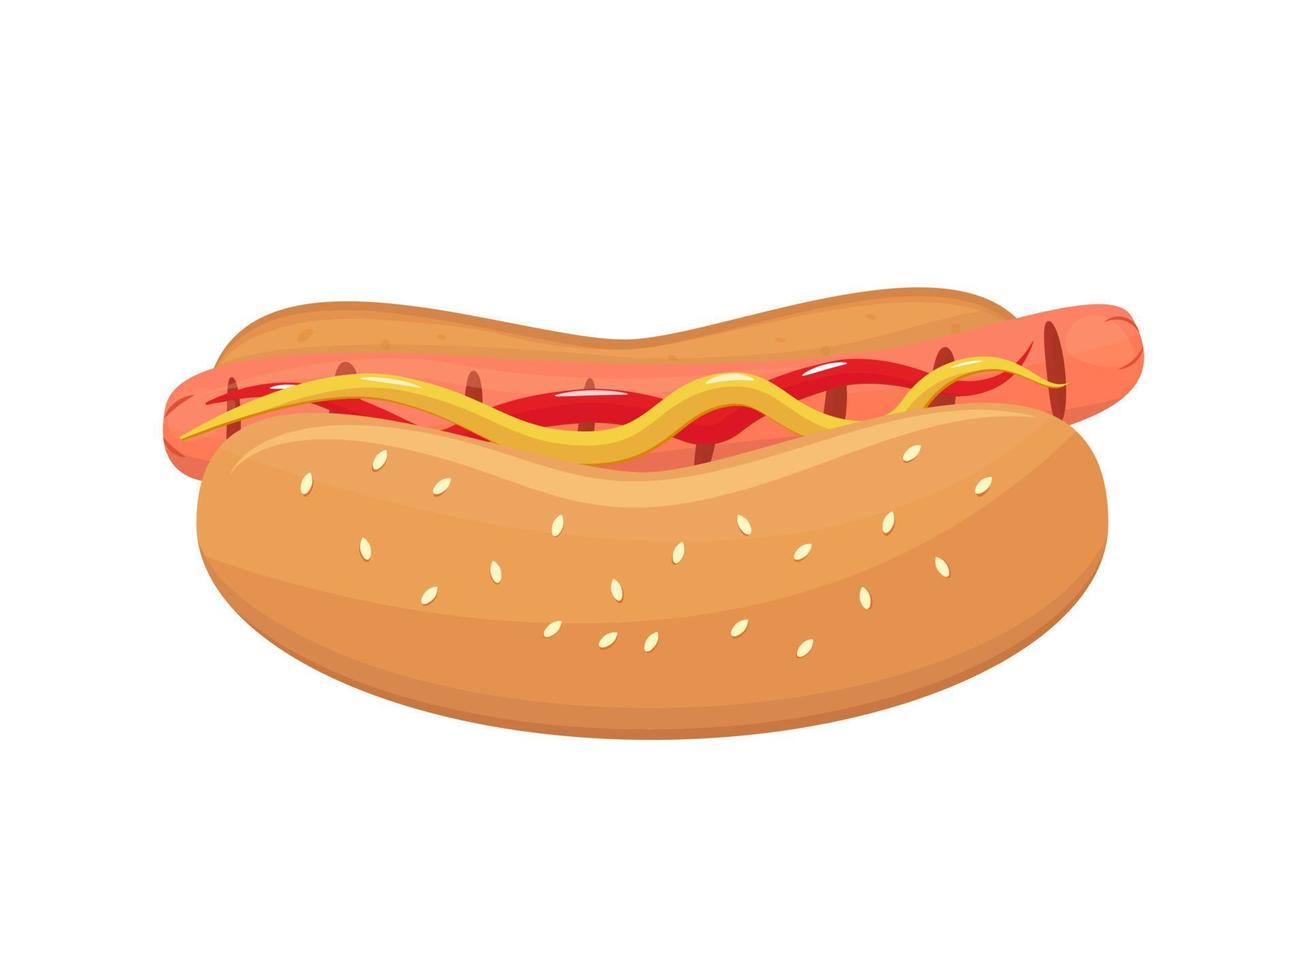 Hotdog isoliert. moderne Fast-Food-Ikone. gegrillte dünne lange Wurst. Senf und Ketchup auf dem Sandwich. Wurst in einem Brötchen mit Sesam. Vektorillustration, flach vektor